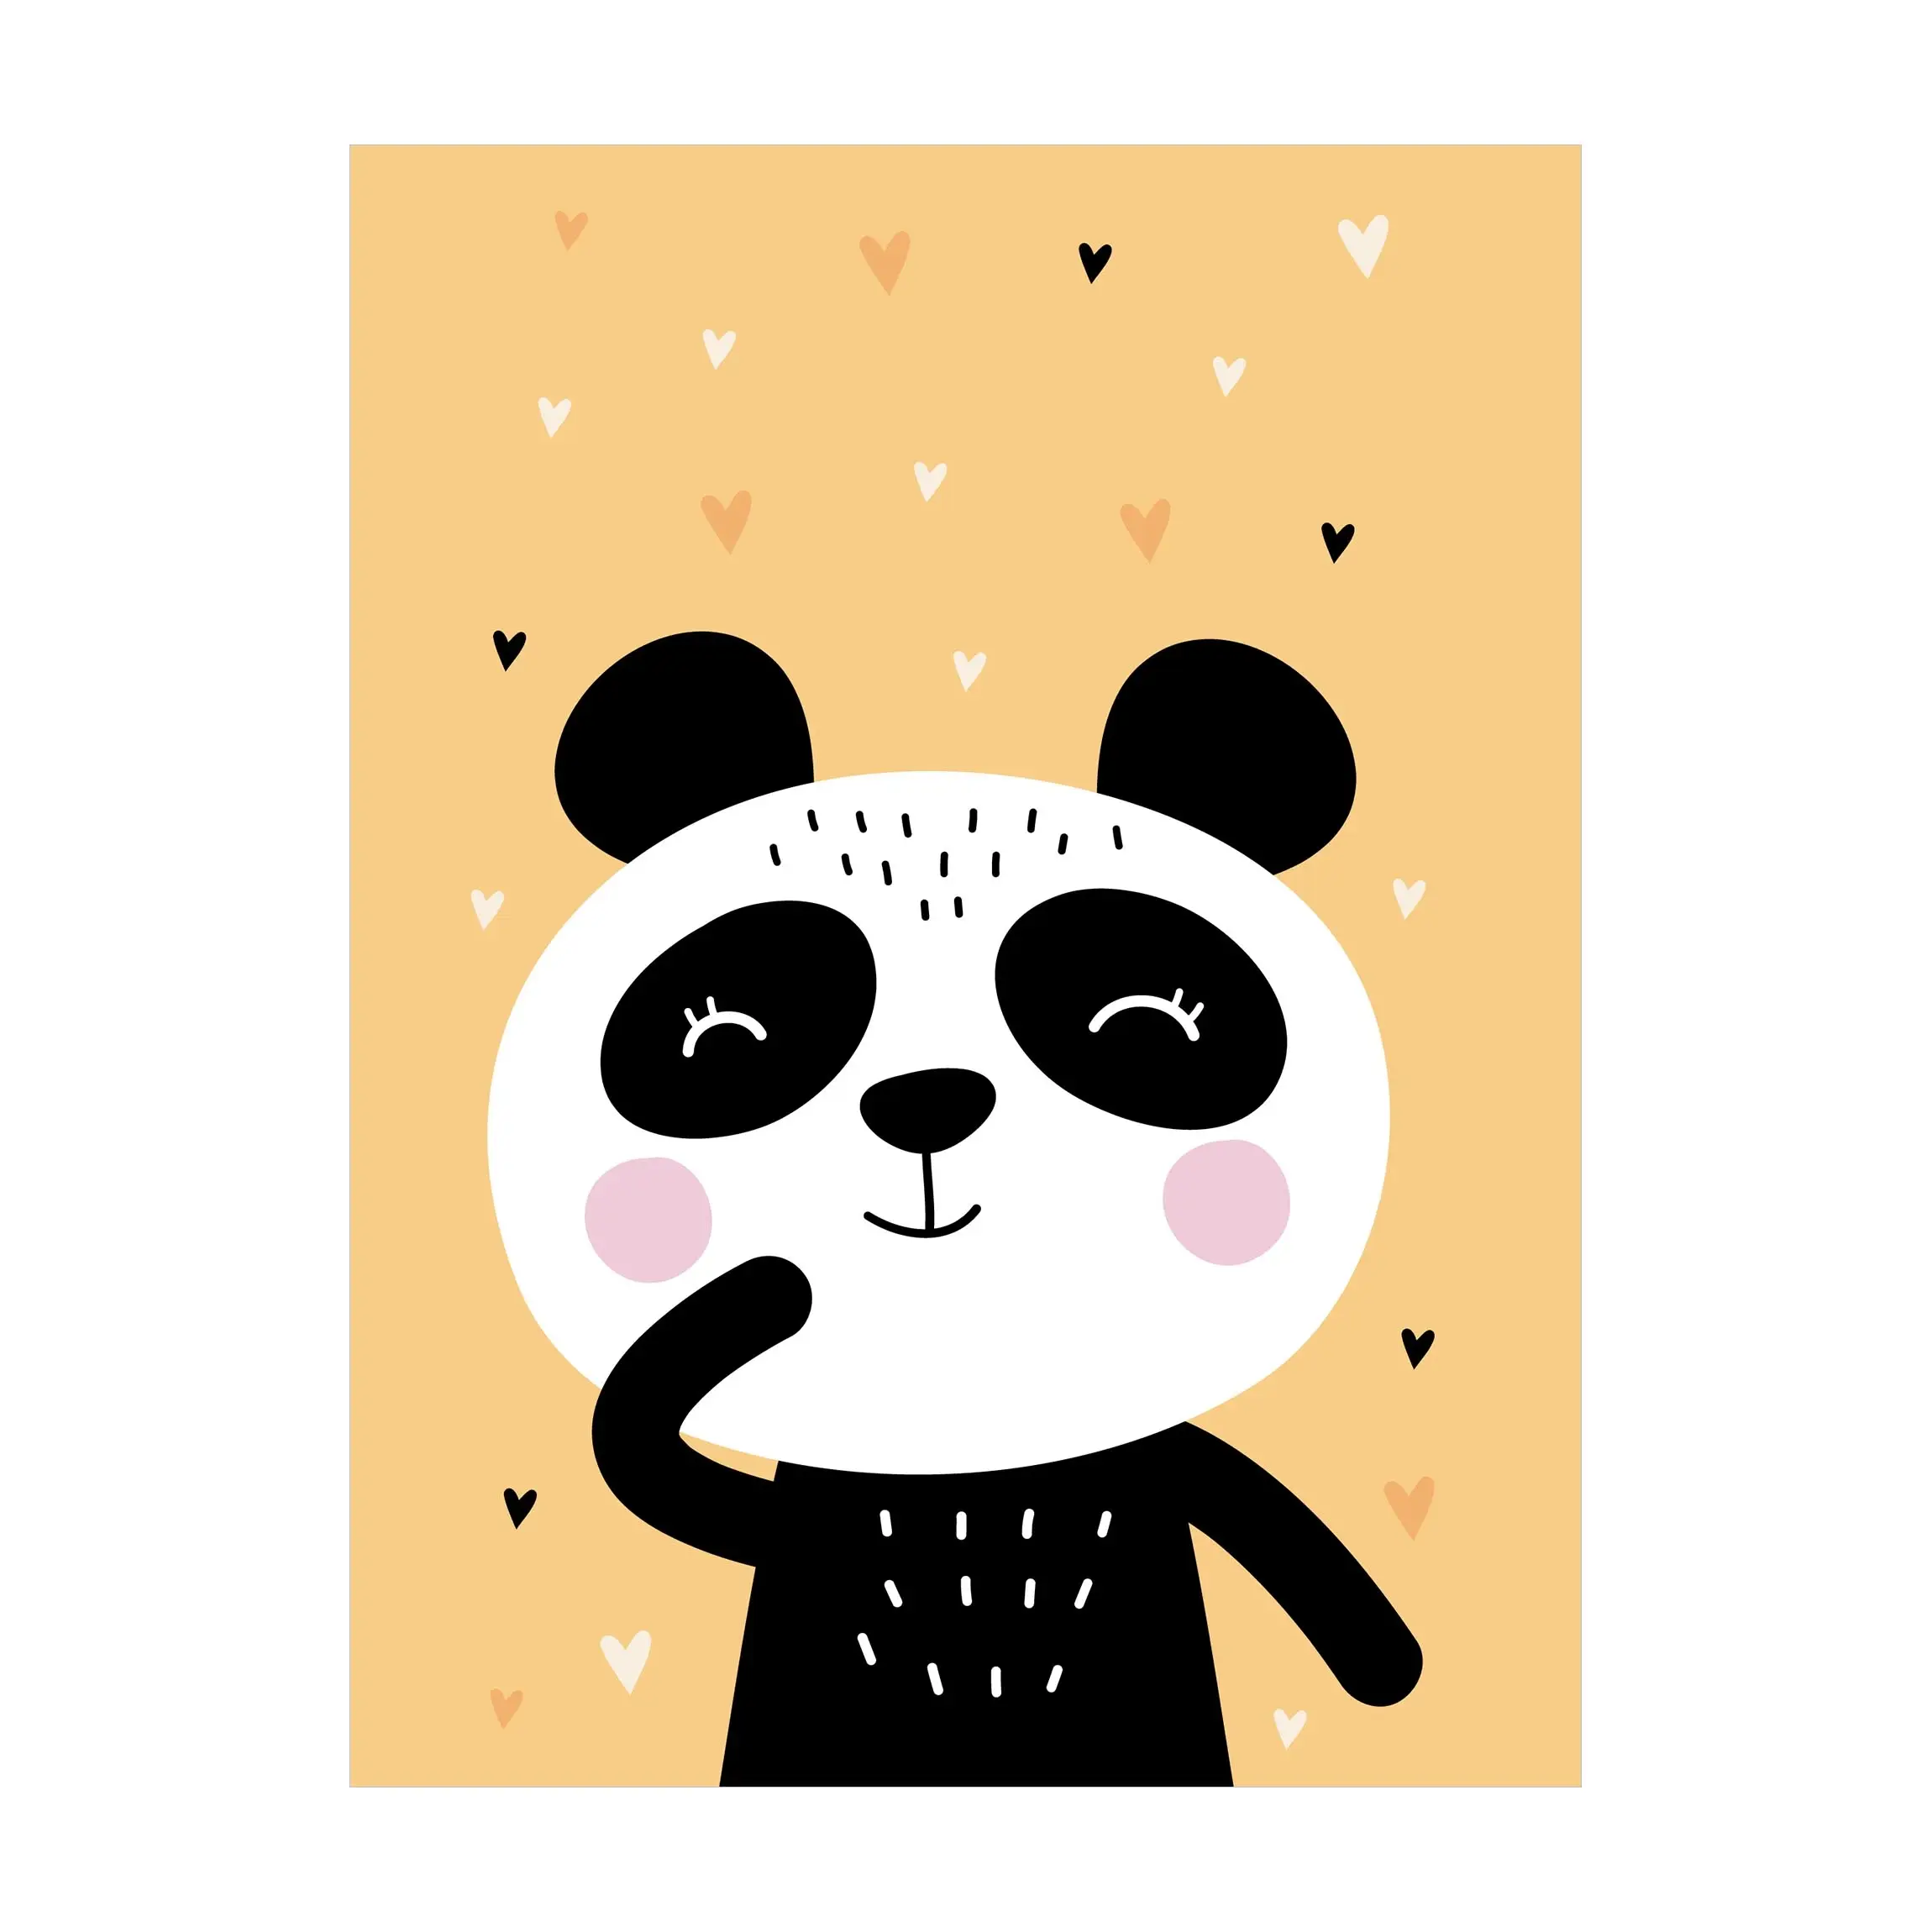 Der Panda gl眉ckliche